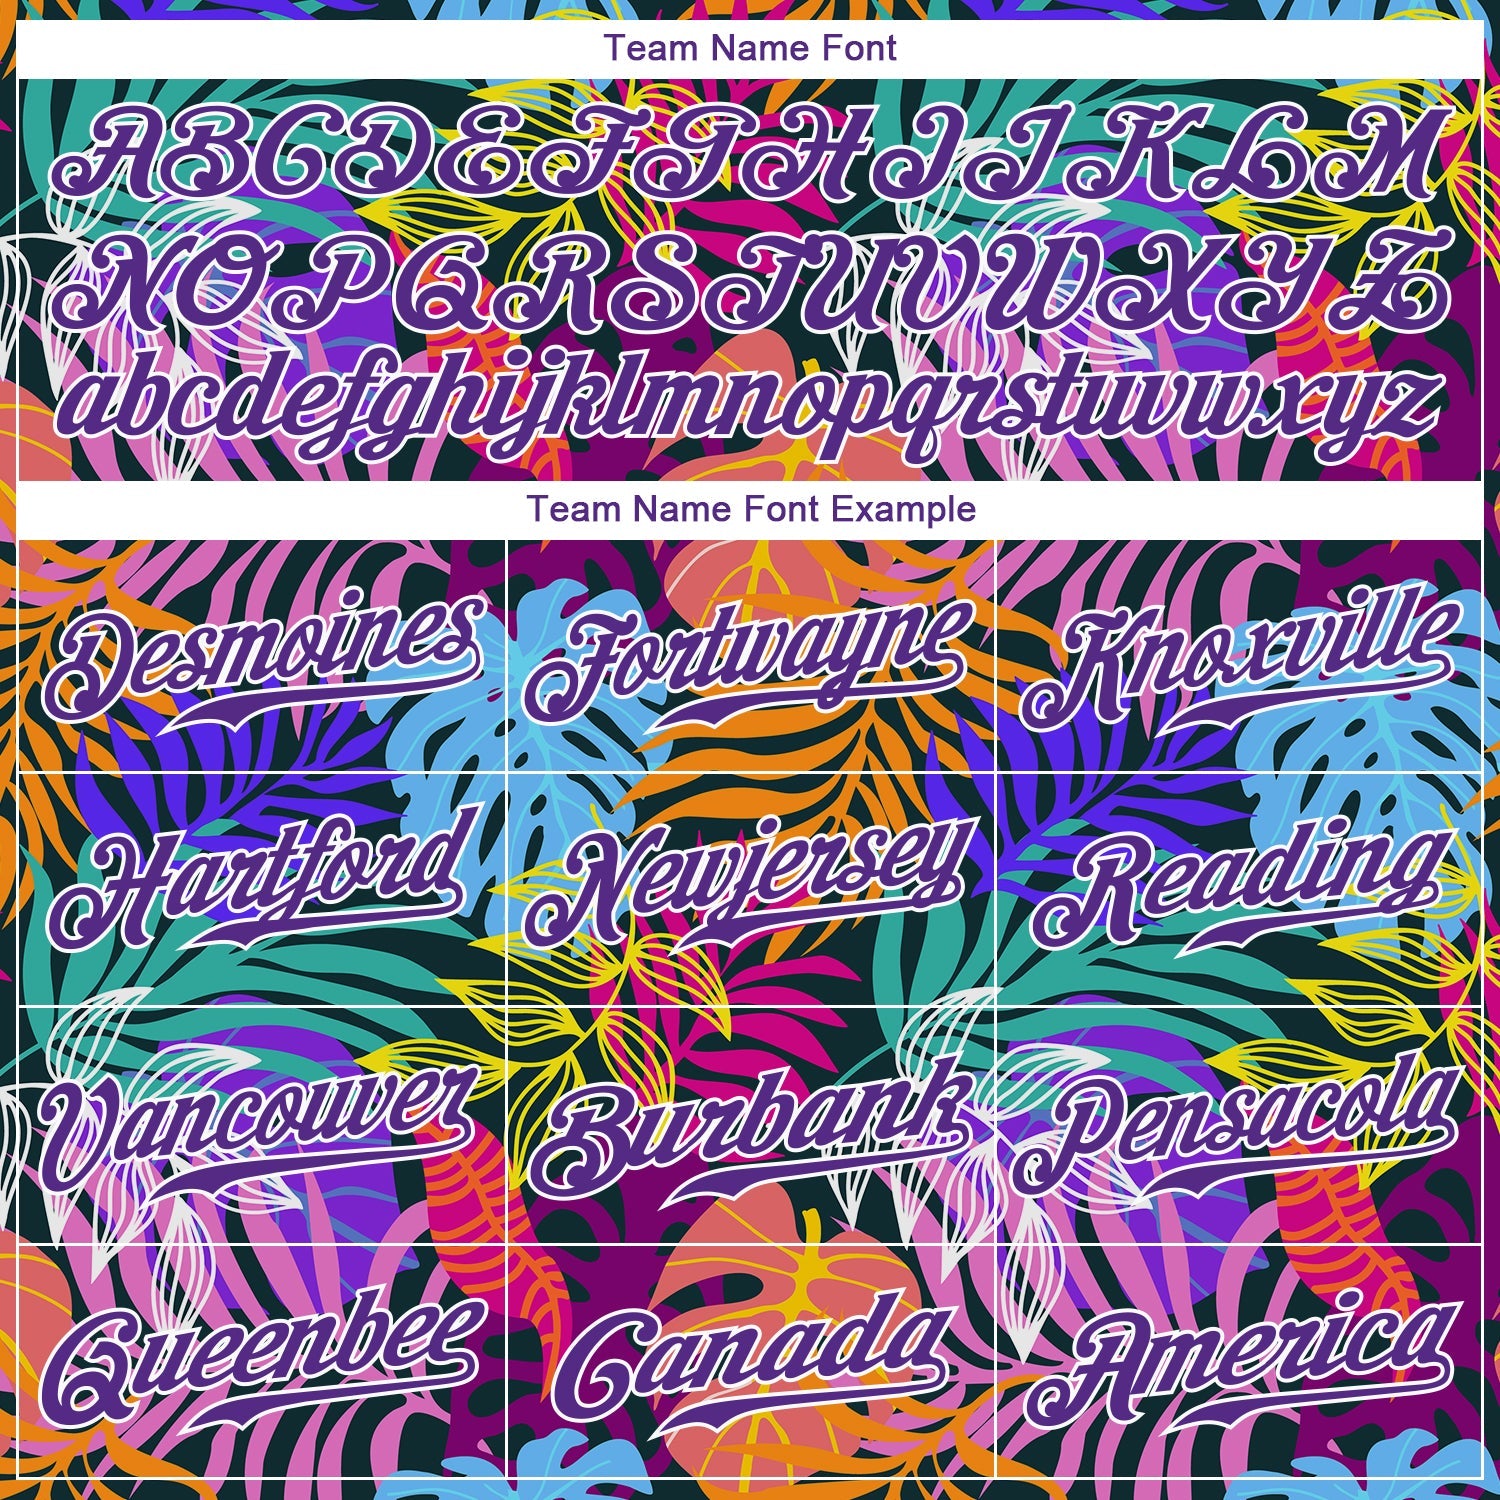 Benutzerdefiniertes weißes, lila-weißes 3D-Musterdesign mit Hawaii-Palmen, authentisches Baseball-Trikot